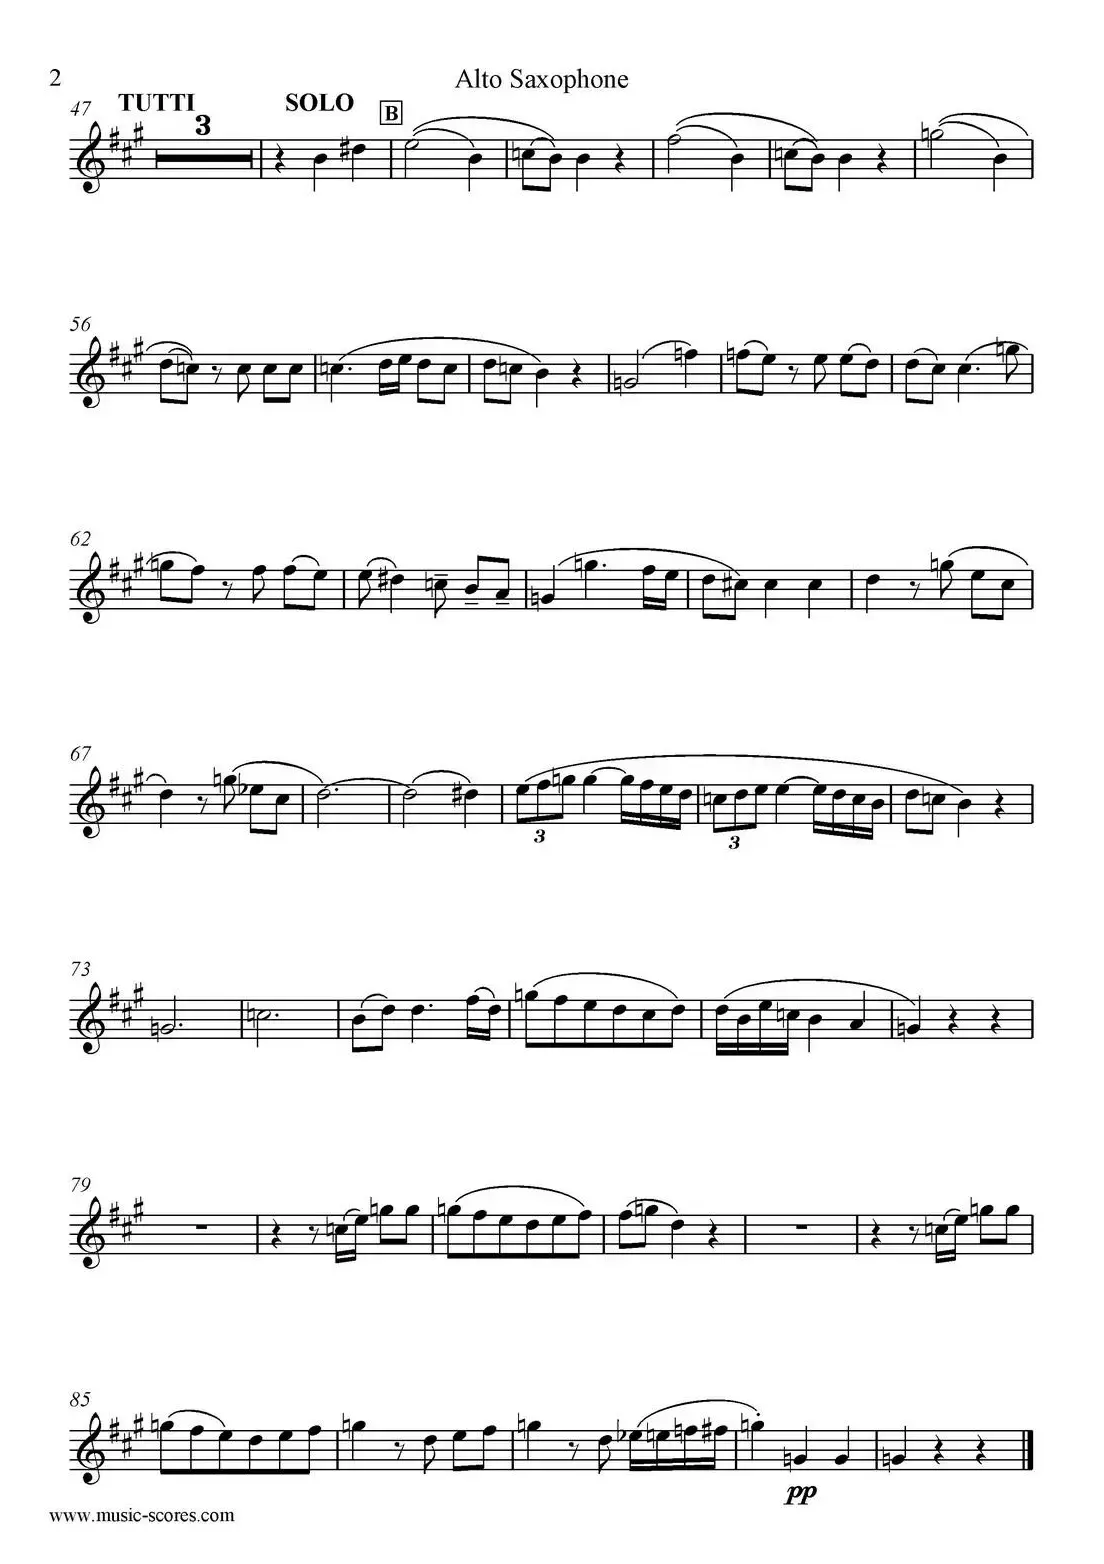 Mozart：Concerto KV495 No.4-2st（高音萨克斯）